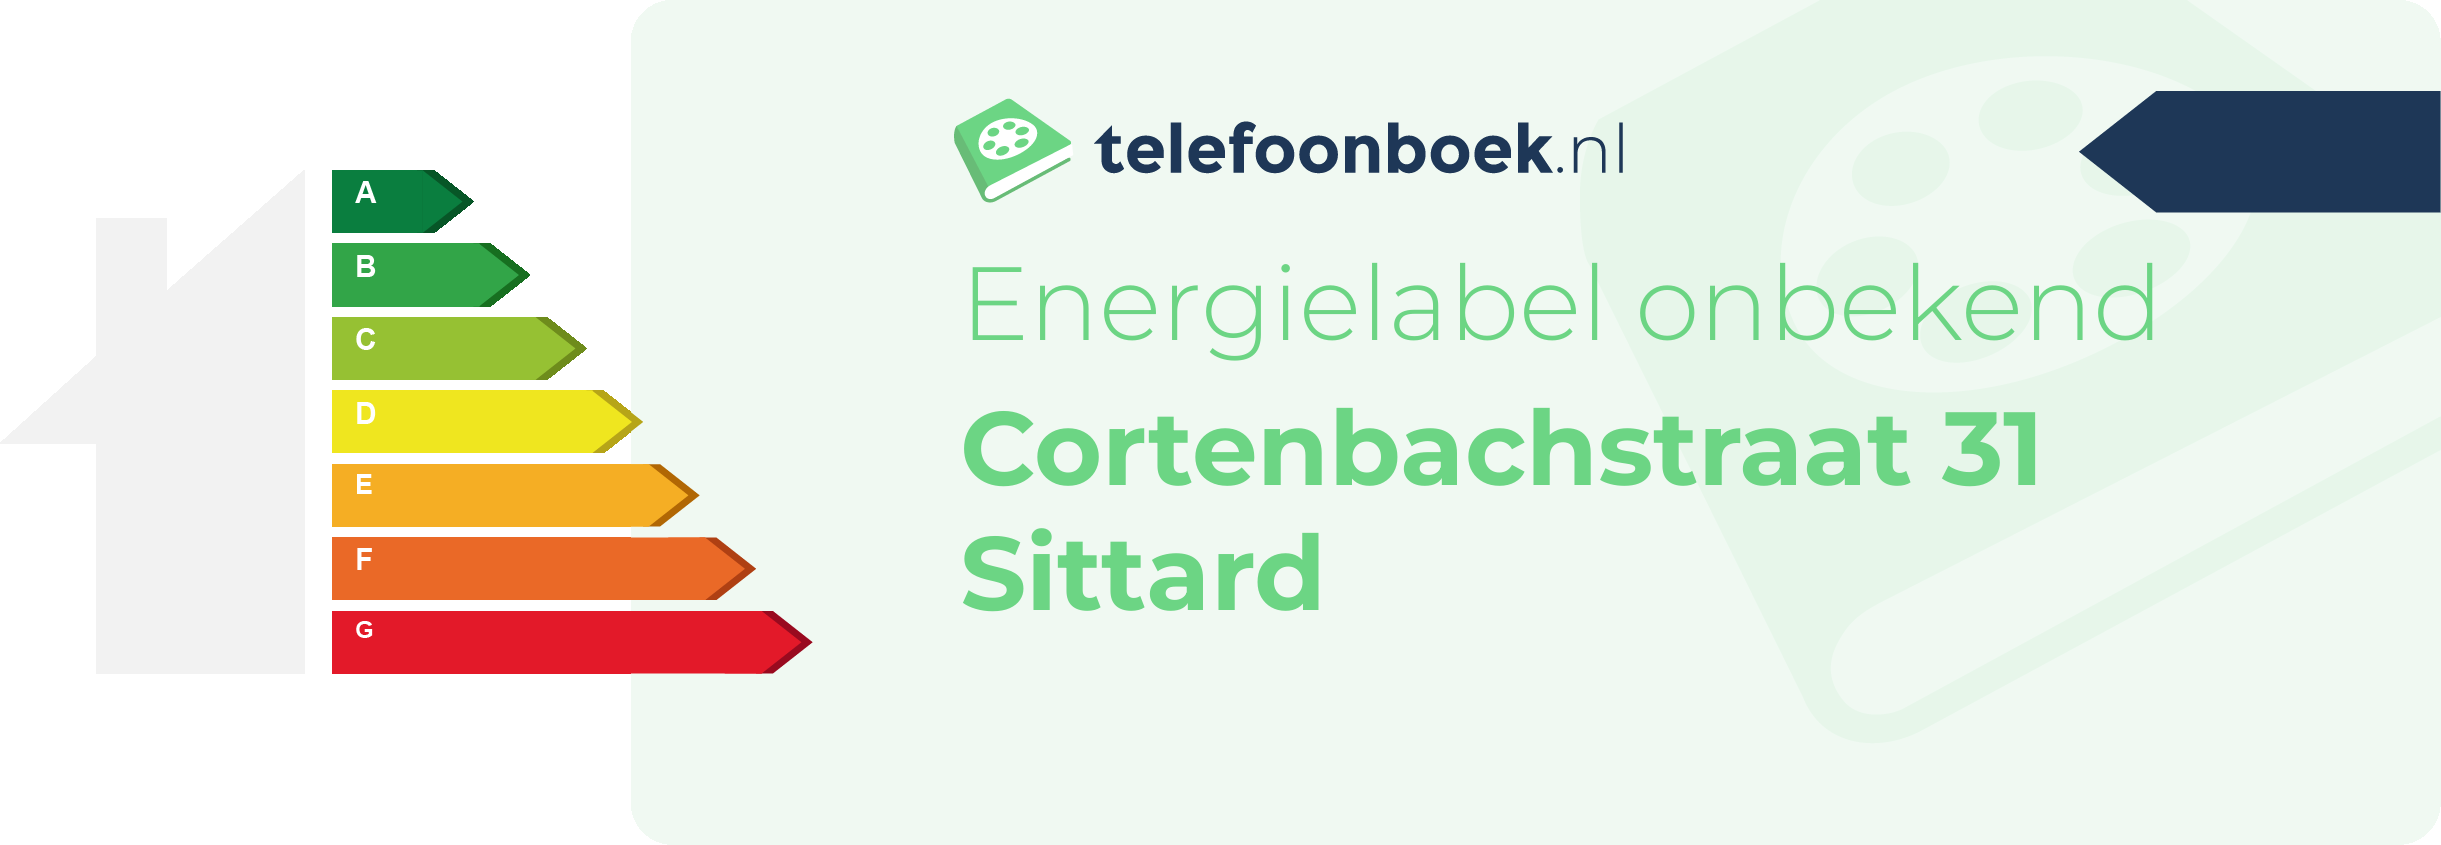 Energielabel Cortenbachstraat 31 Sittard